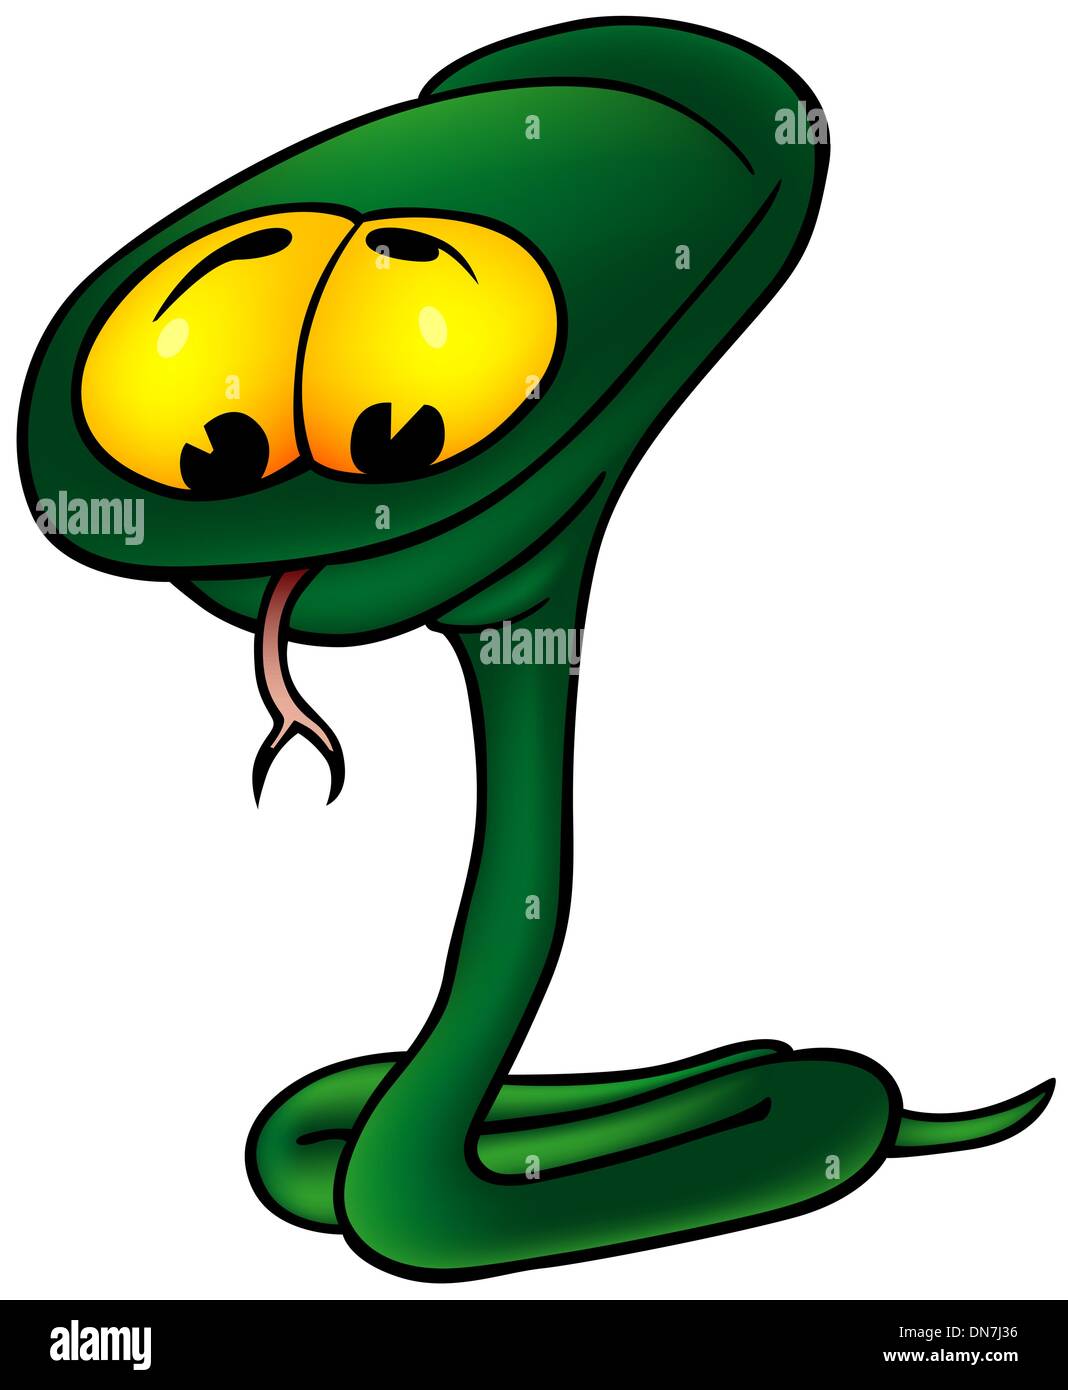 Serpiente enroscada verde Ilustración del Vector